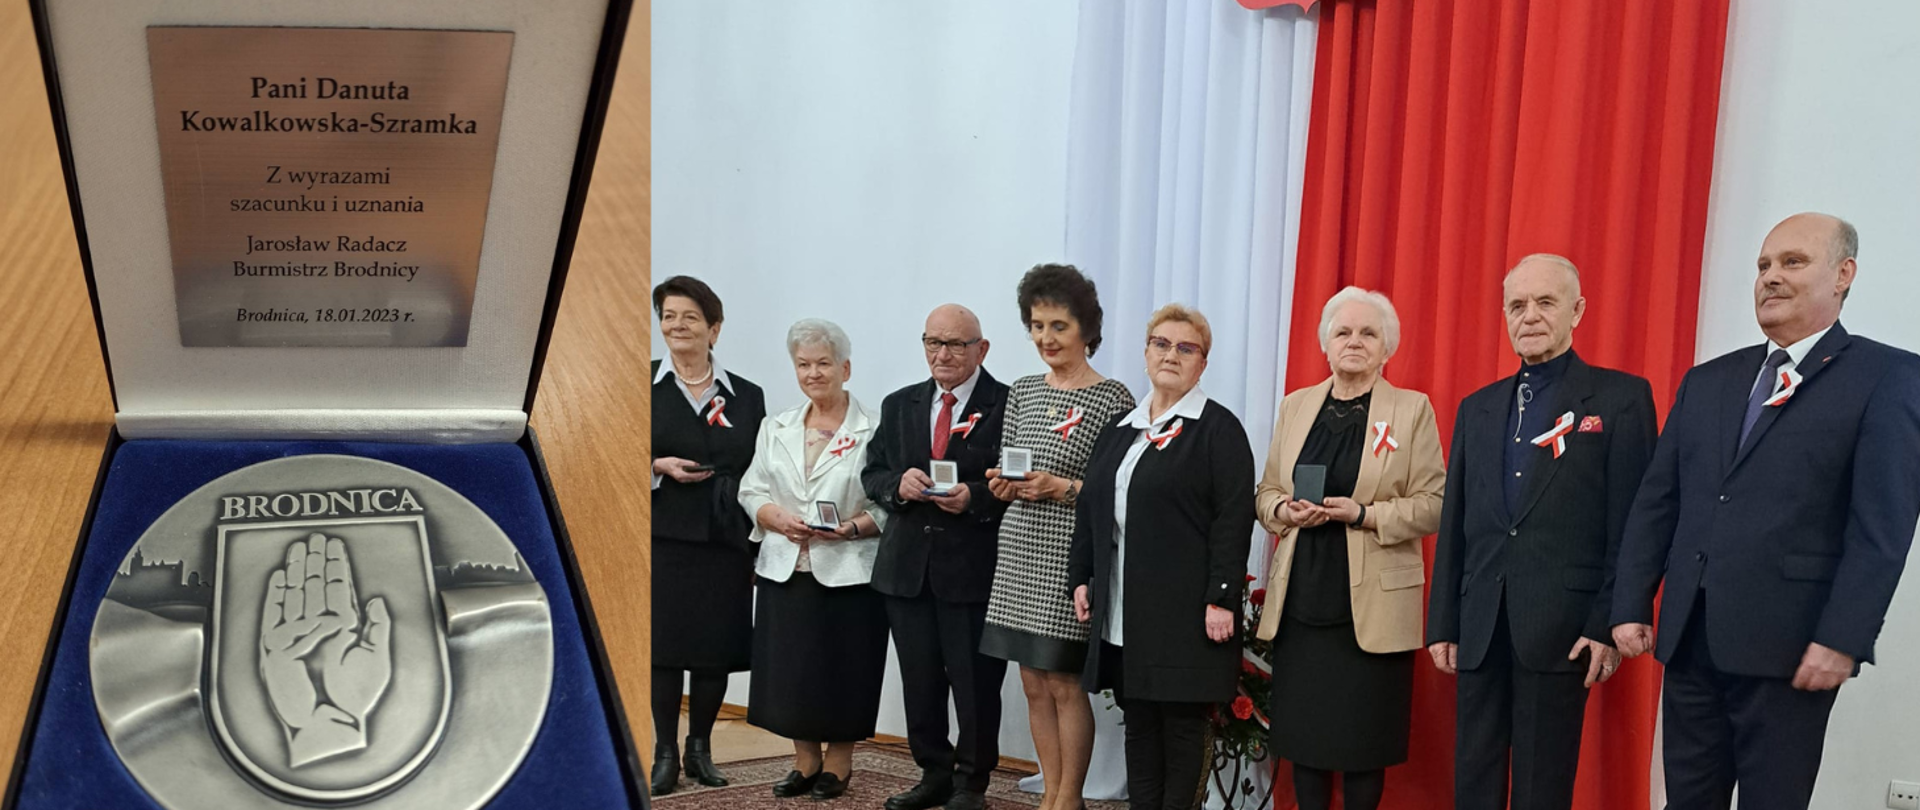 Państwowy Powiatowy Inspektor Sanitarny w Brodnicy uhonorowany medalem Burmistrza Brodnicy